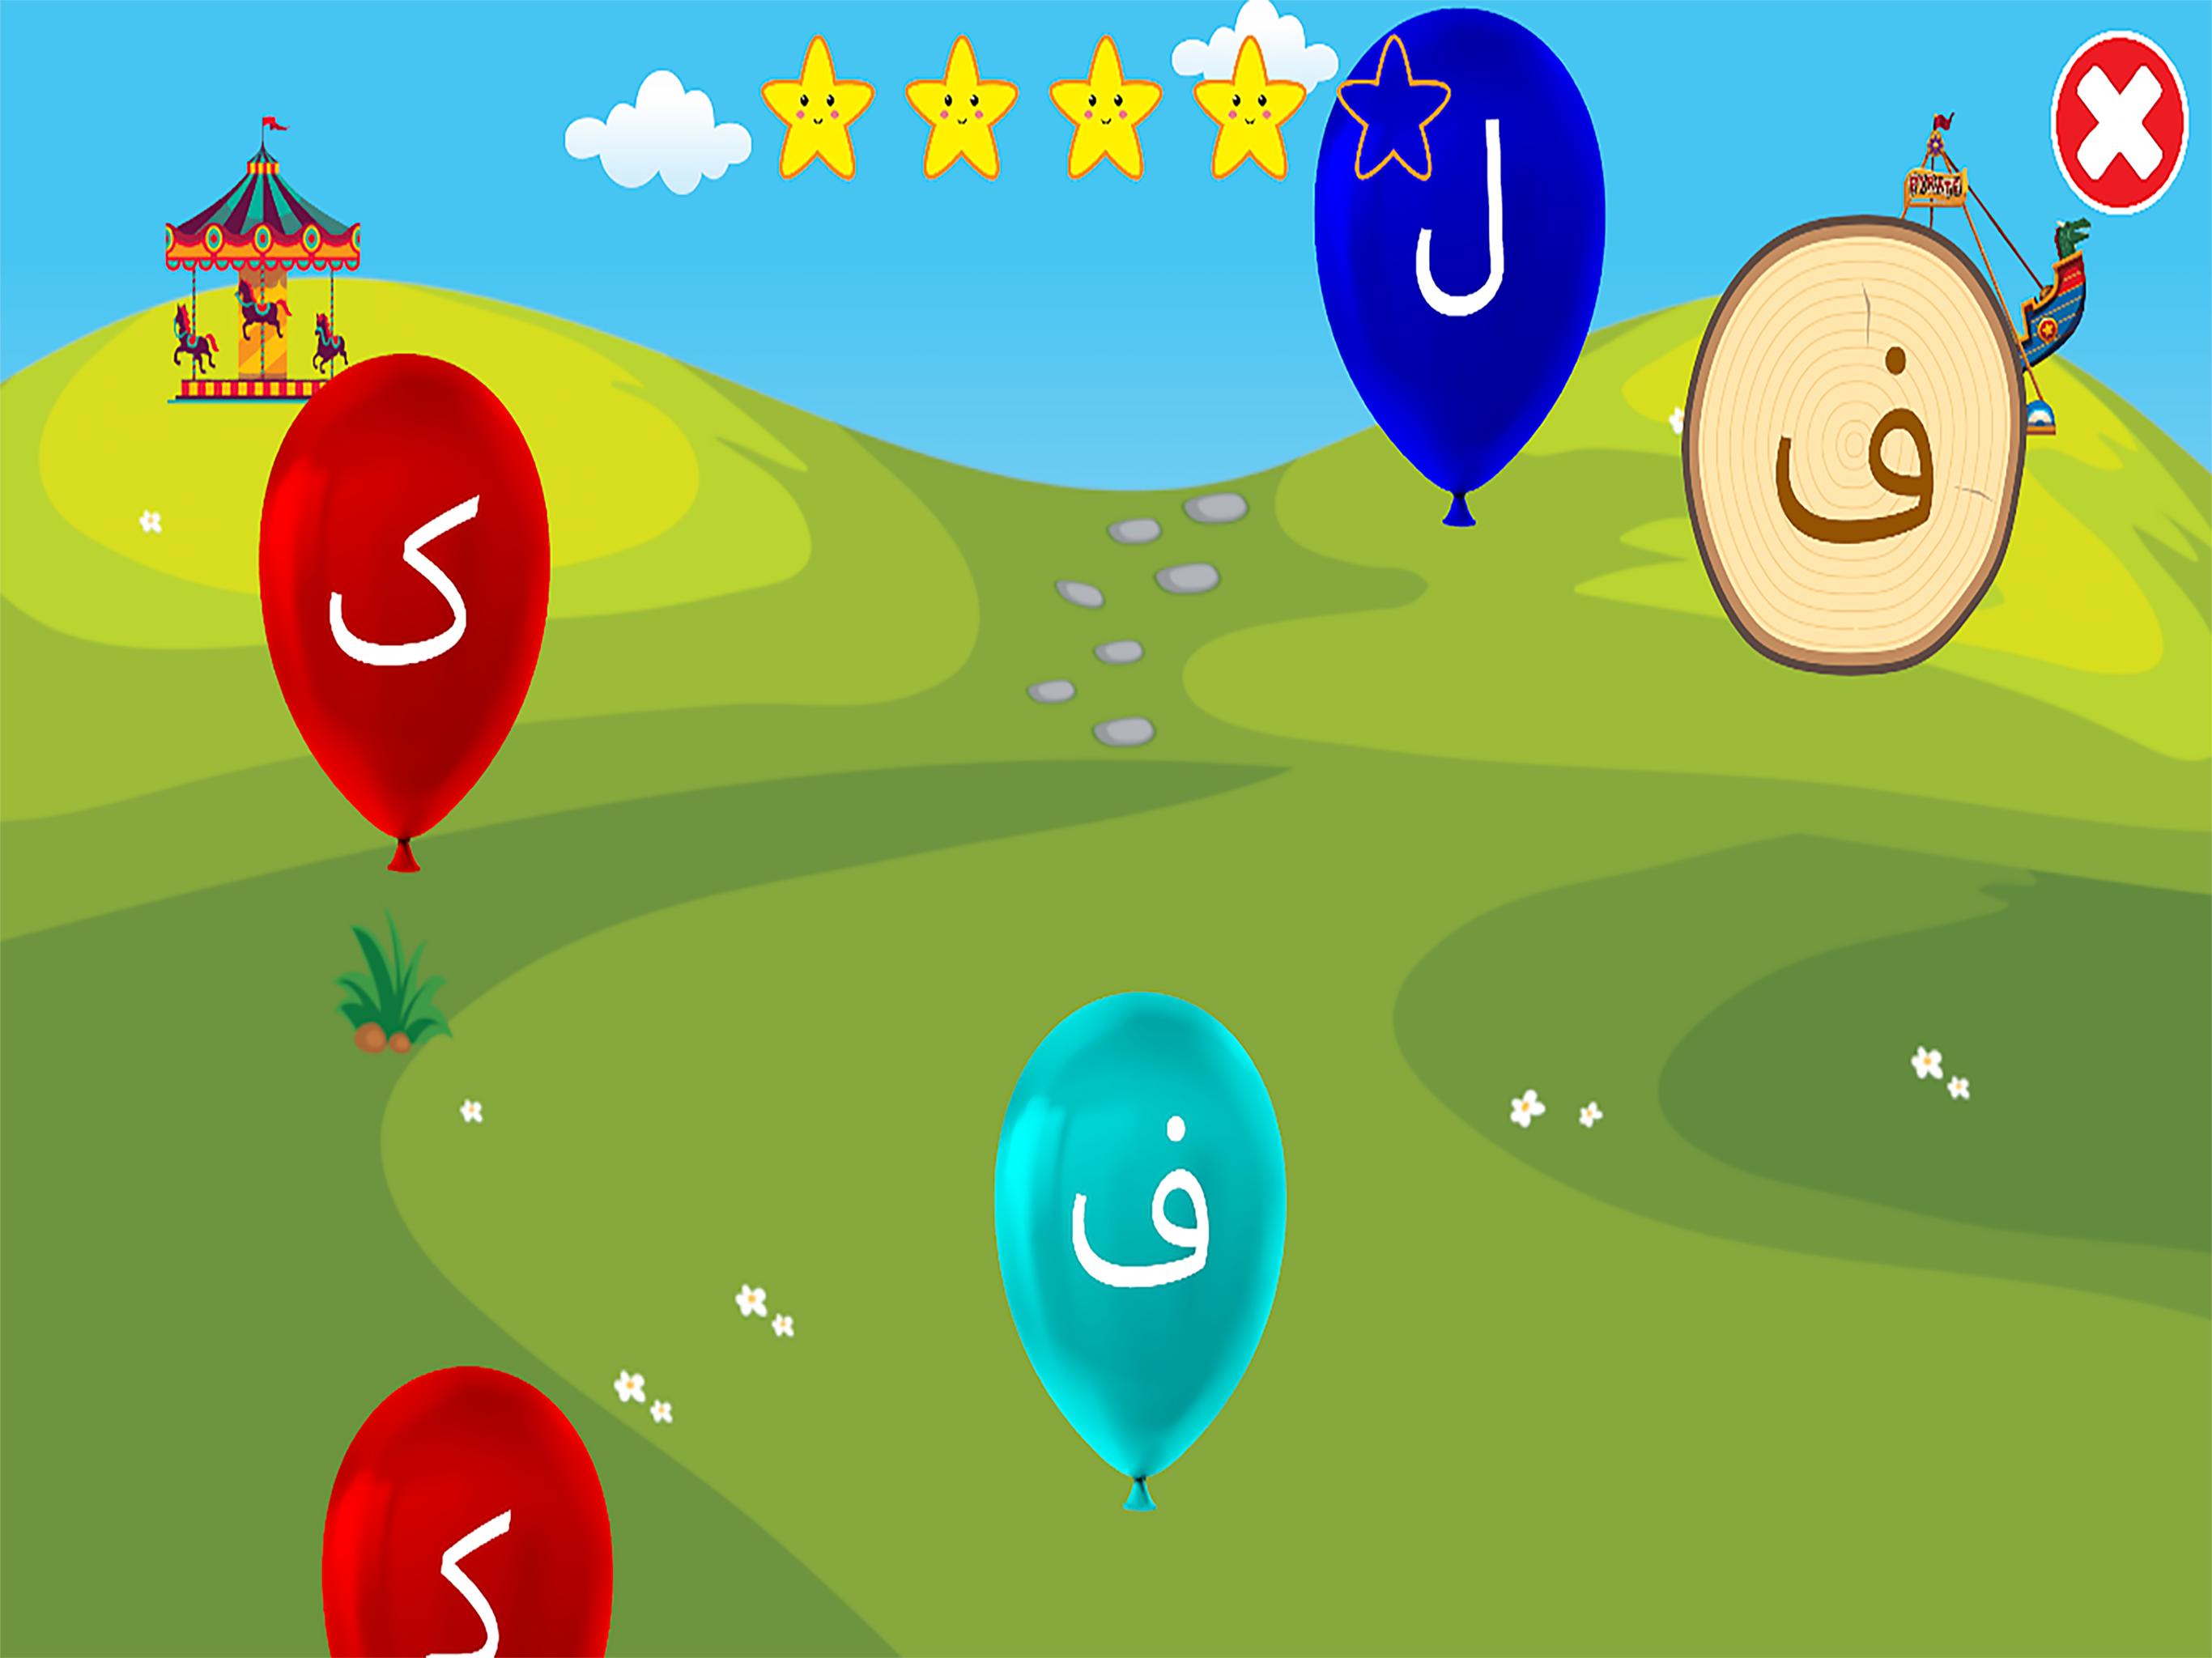 الفبای فارسی کودکان (Farsi alphabet game) 1.11.2 Screenshot 15